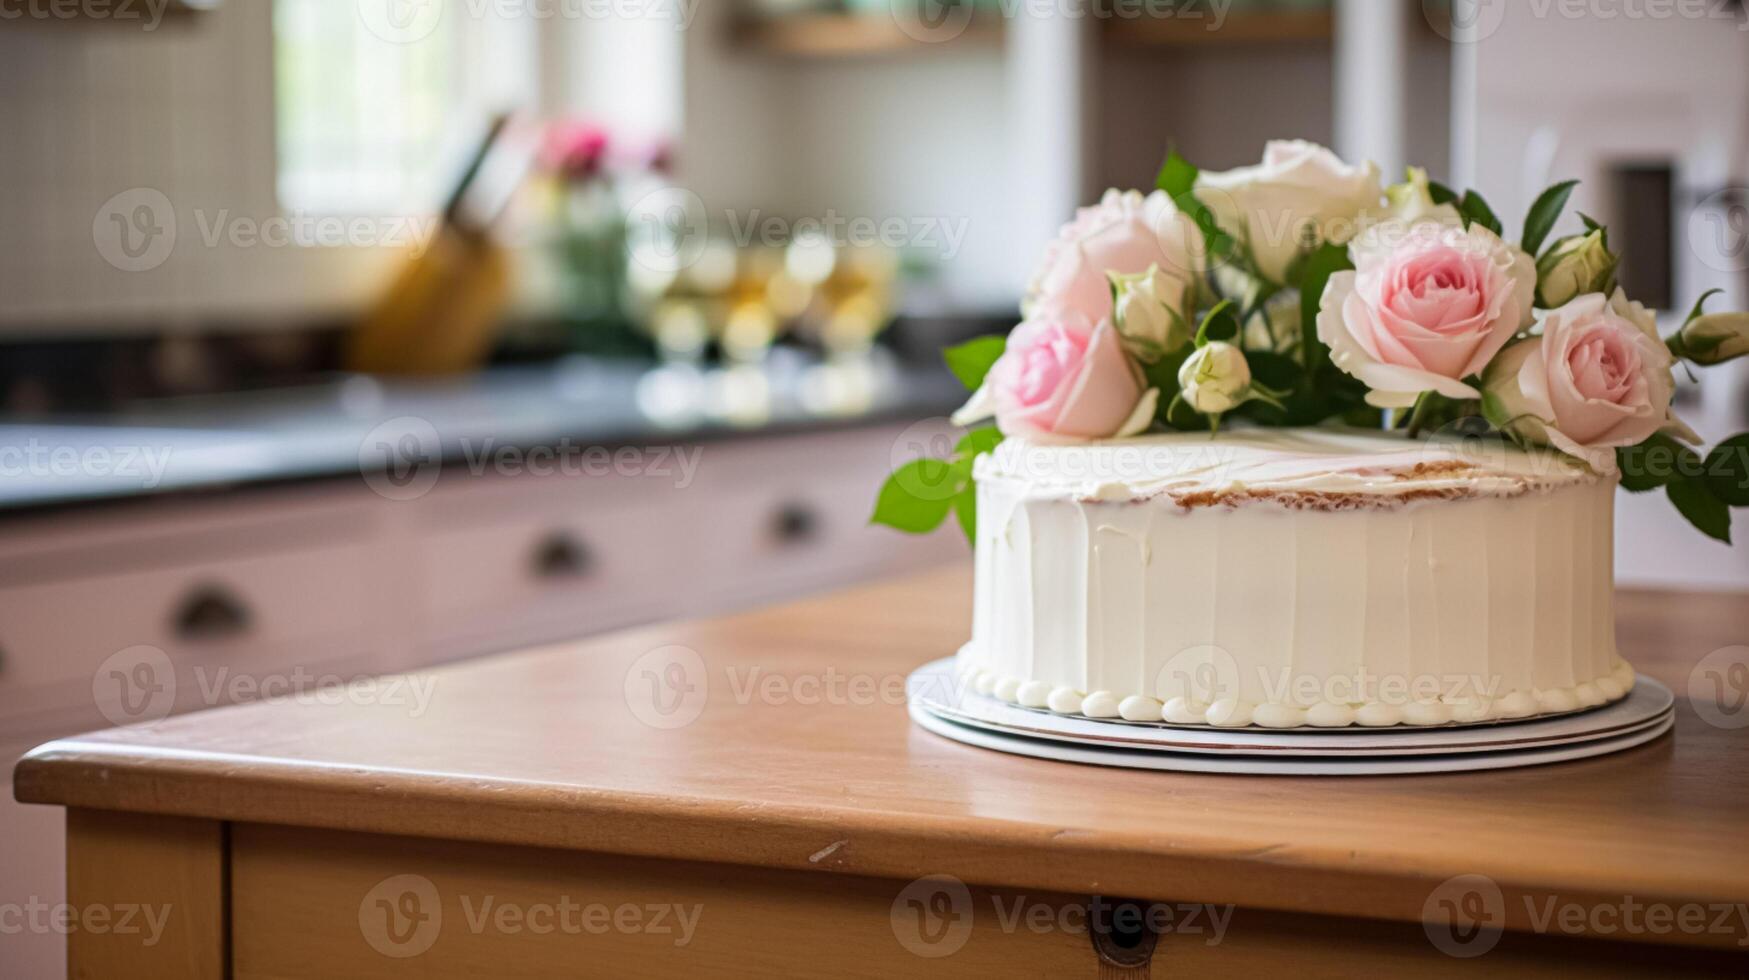 ai genererad hemlagad födelsedag kaka i de engelsk landsbygden hus, stuga kök mat och Semester bakning recept foto